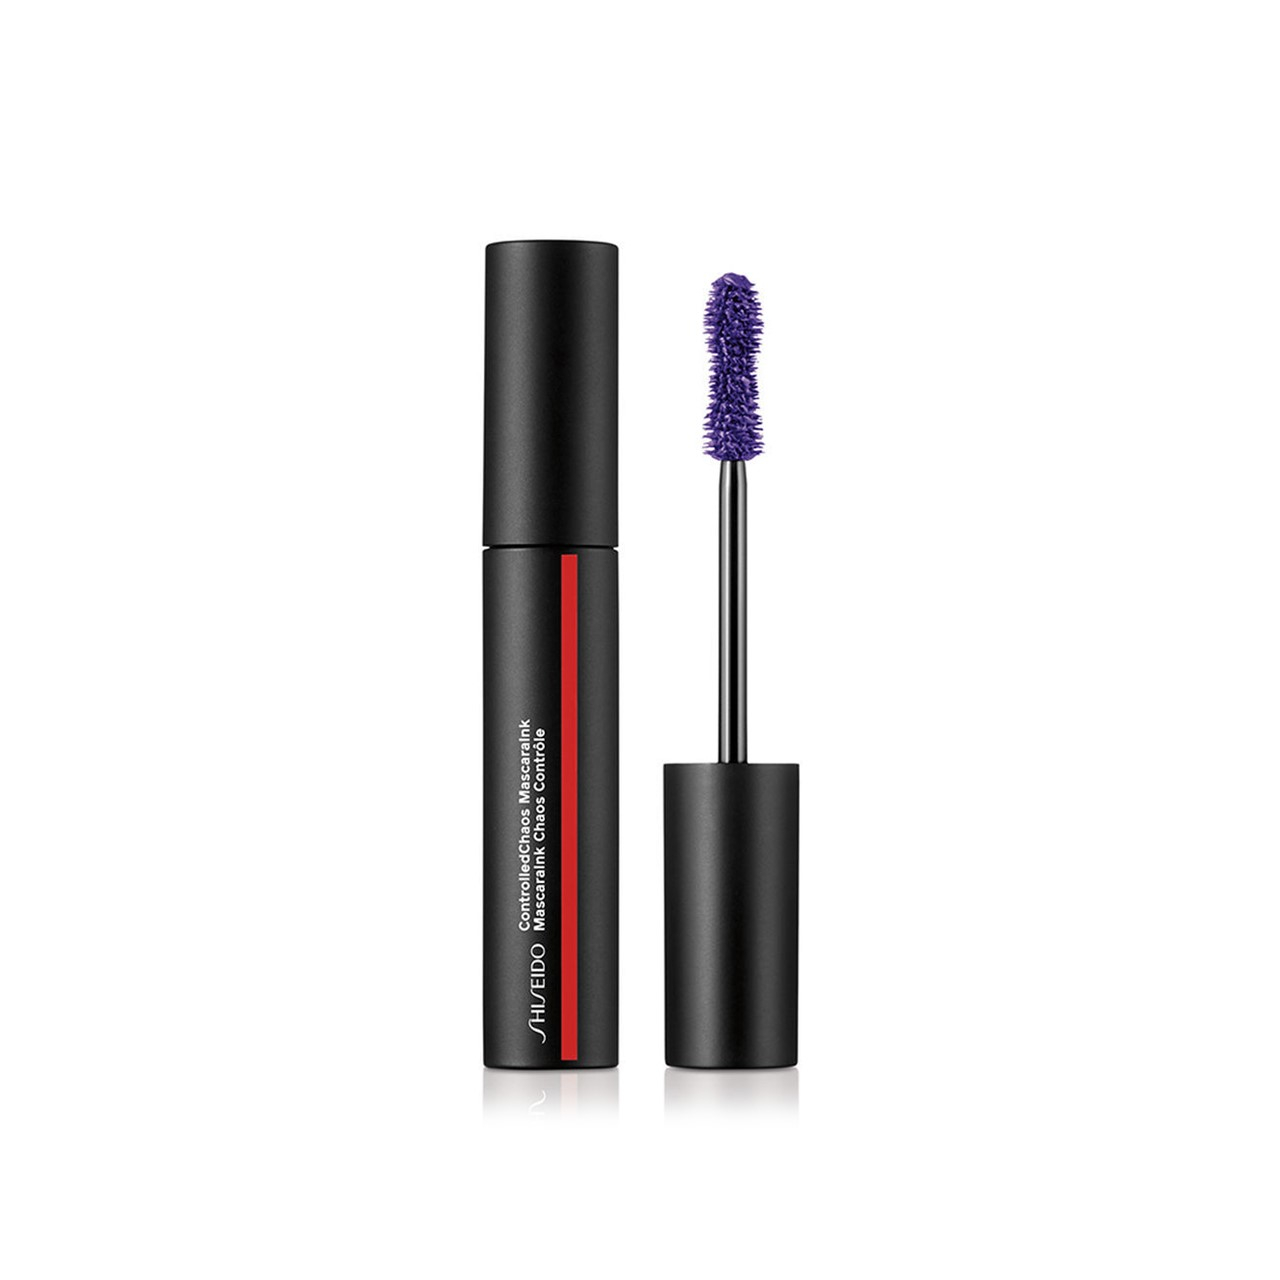 Shiseido ControlledChaos MascaraInk 03 Violet Vibe 11.5ml (0.39fl oz)